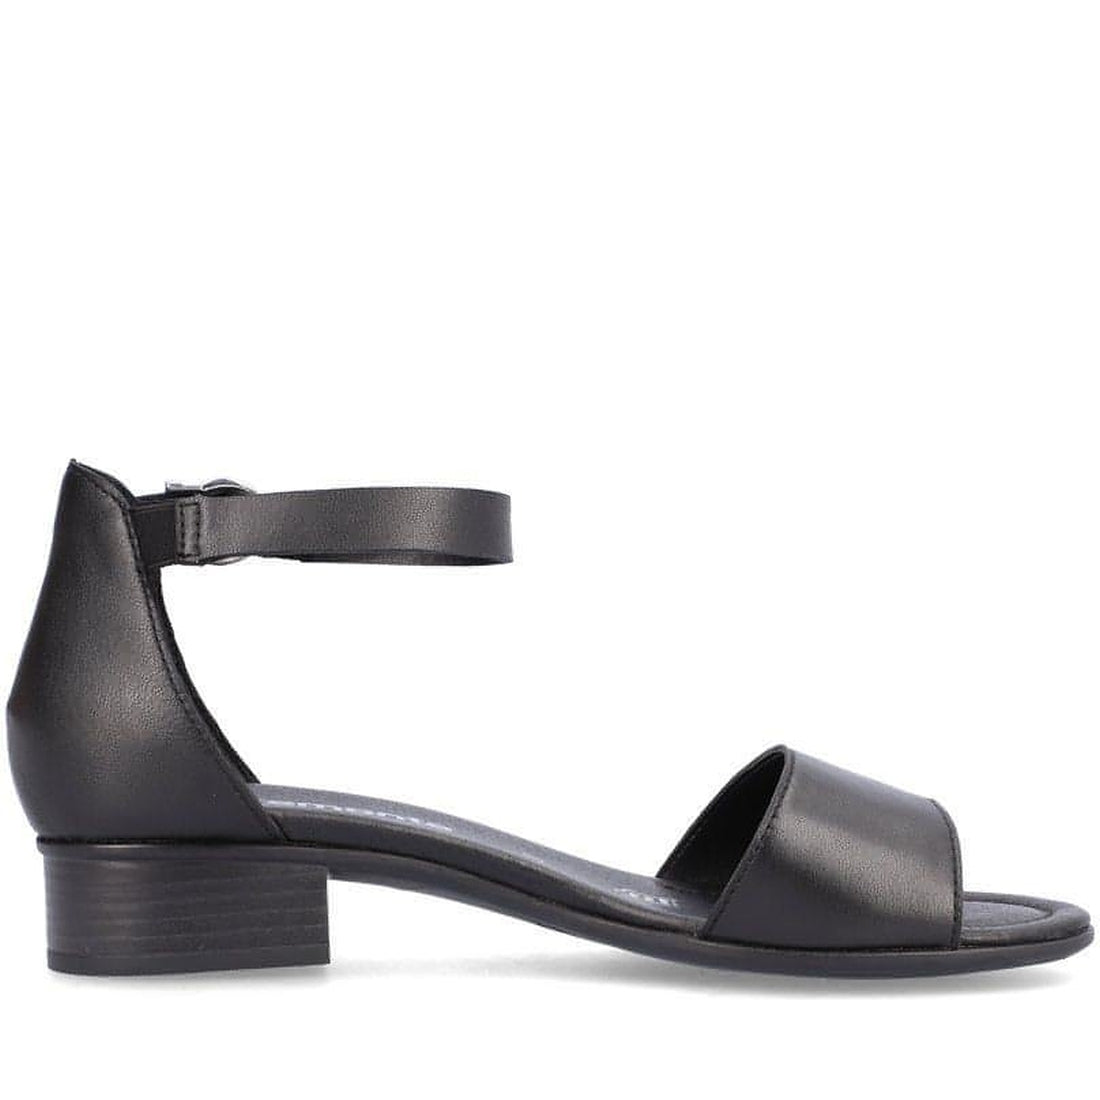 Remonte womens black casual part-open sandals | Vilbury London